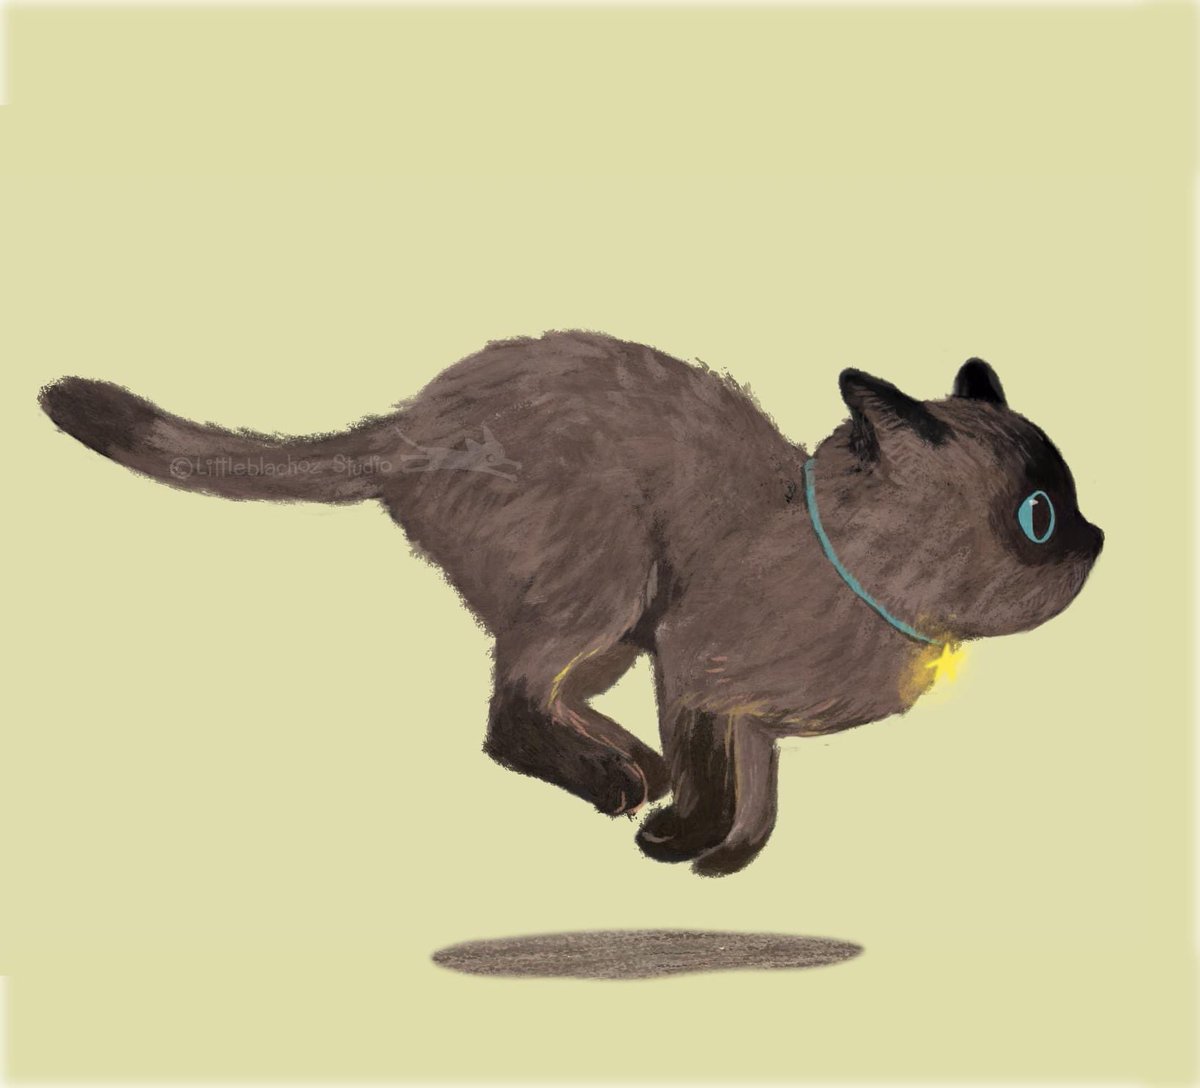 Run cat run! 😸
.
.
//ภาพจาหหนังสือภาพเรื่องล่าสุดของล่าสุดครับ 😸
#picturebookmaker
#illustrationchildrenbook
#childrenbooks
#หนังสือภาพสำหรับเด็ก